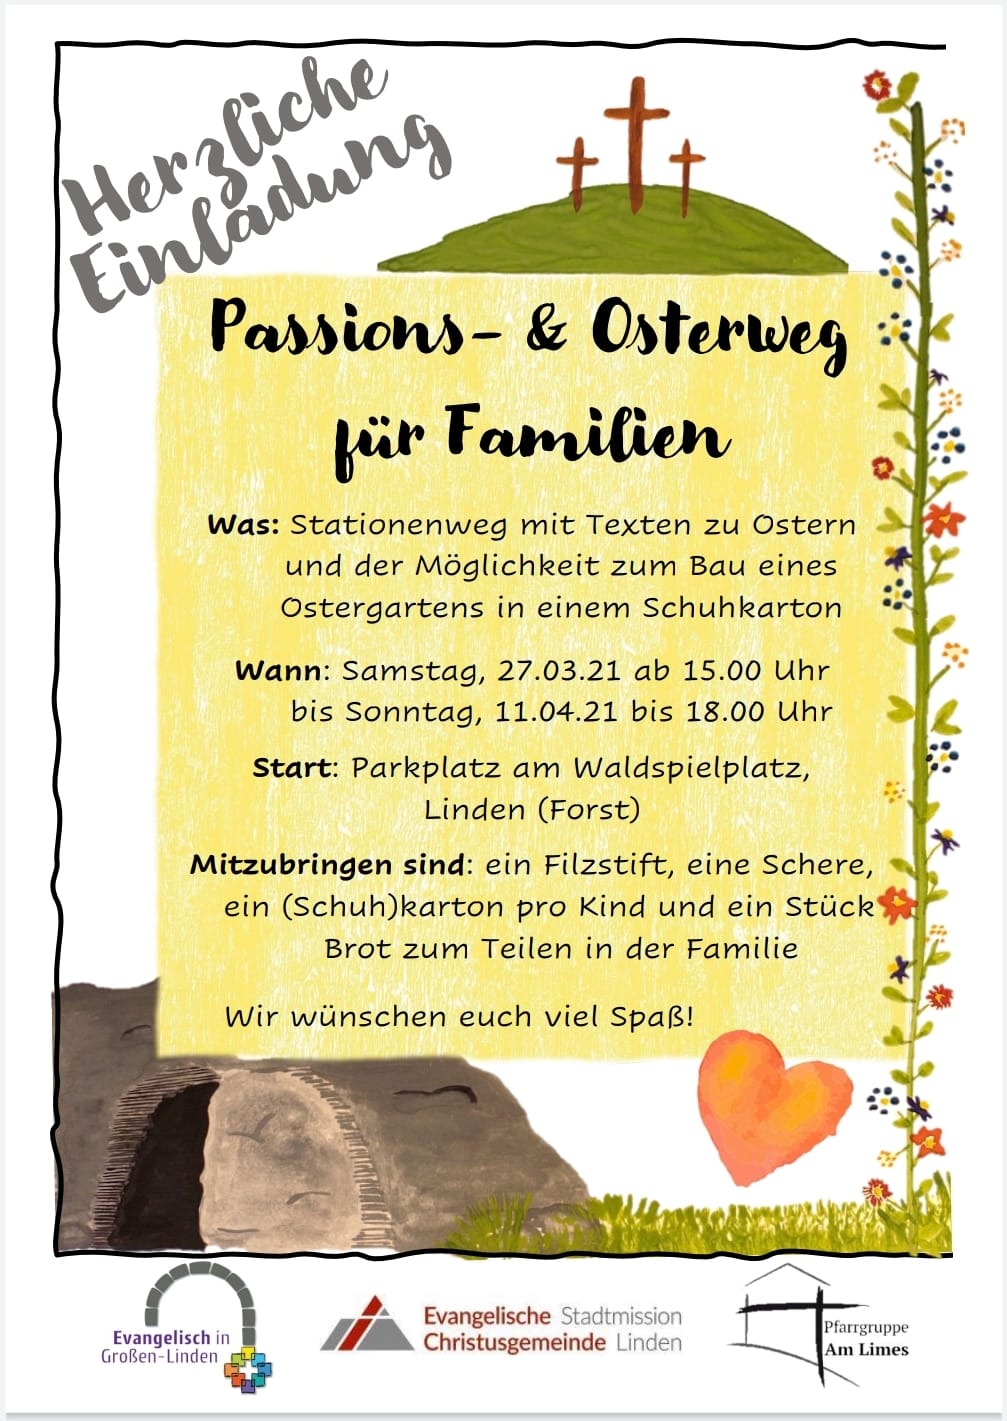 Einladung zum Passions- und Osterweg (c) Evangelische Gemeinde Großen Linden - Stadtmission Linden - Pfarrgruppe Am Limes